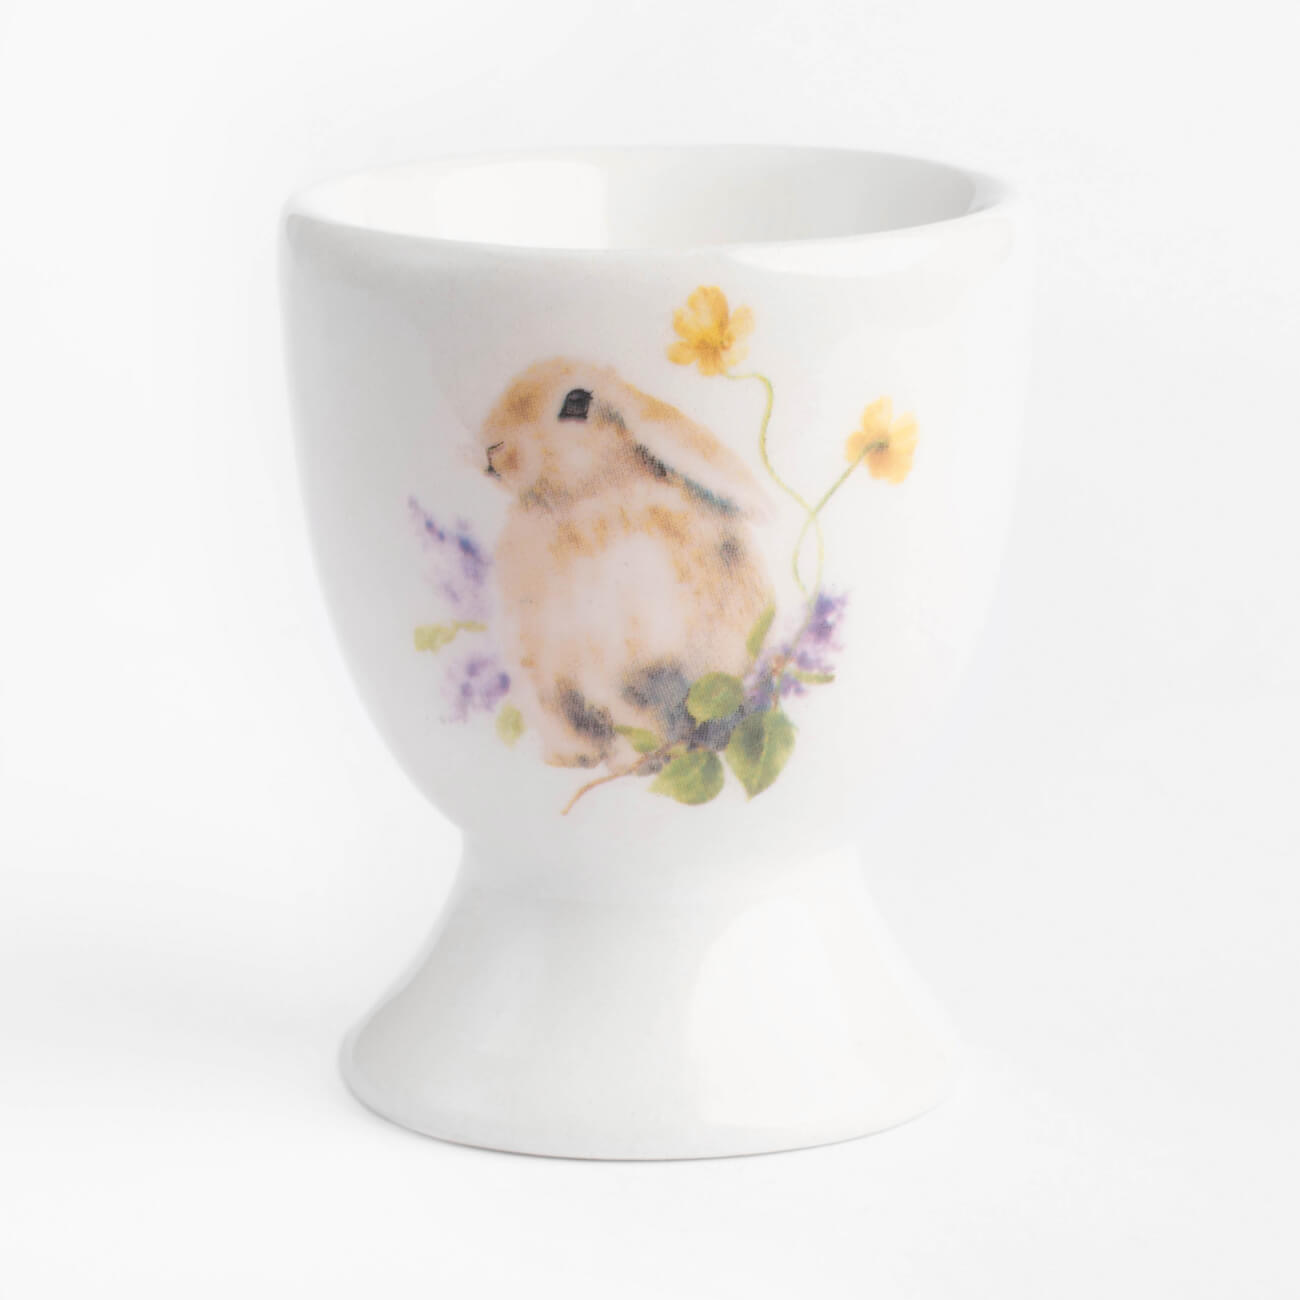 Подставка для яйца, 6 см, керамика, белая, Кролик в цветах, Easter - фото 1